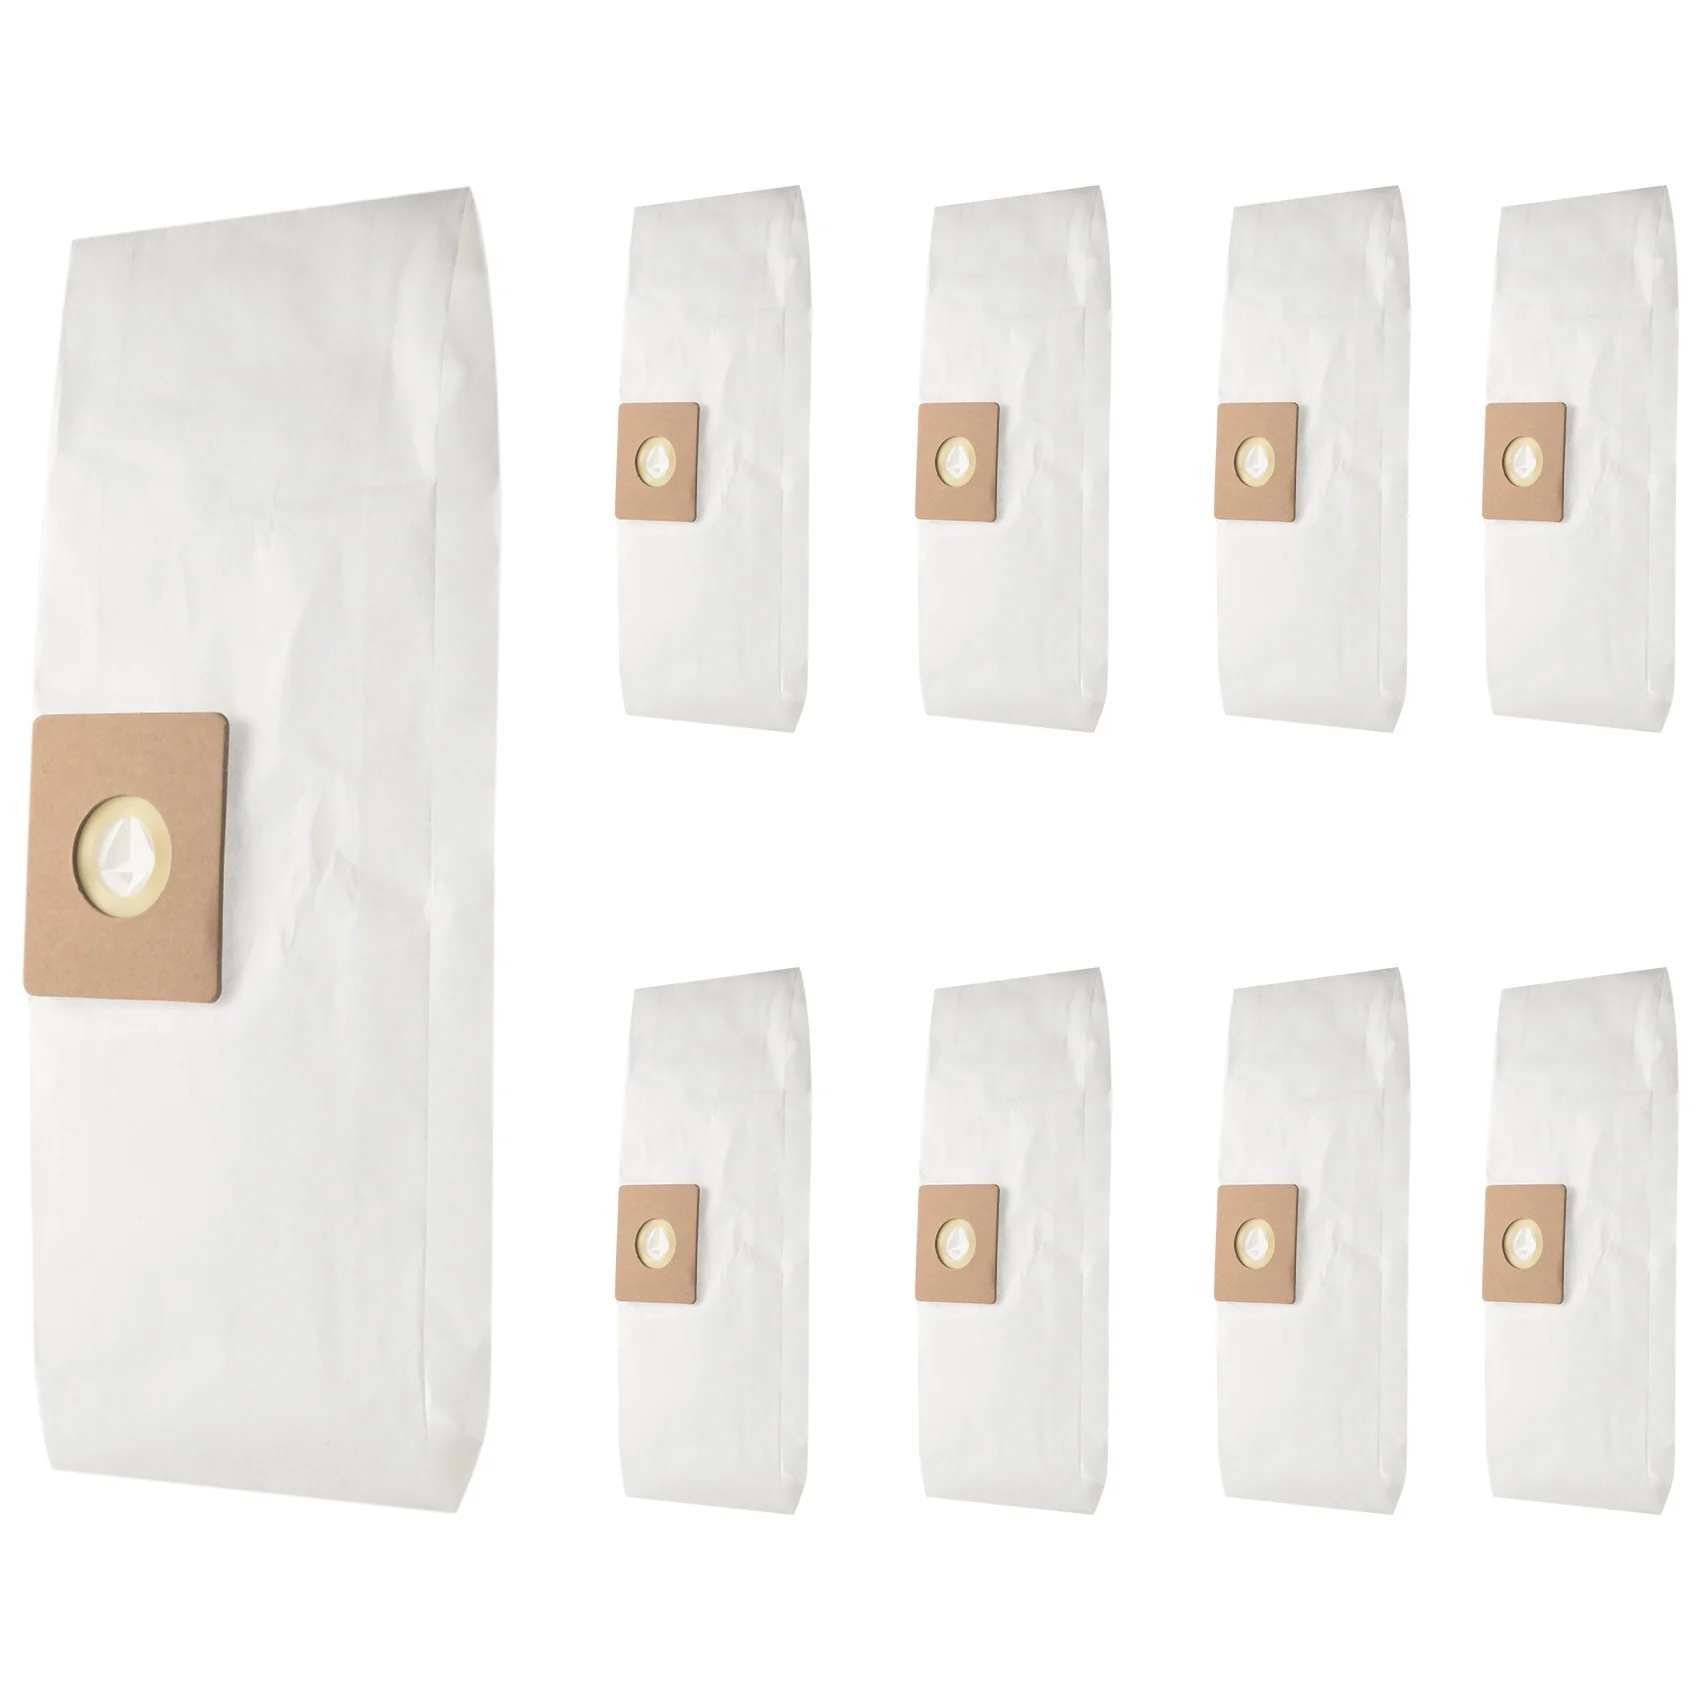 Сменные фильтровальные пакеты типа a из 9 упаковок для магазинного пылесоса объемом 1,5 галлона Заменяют деталь 90667 SV-9066700 0